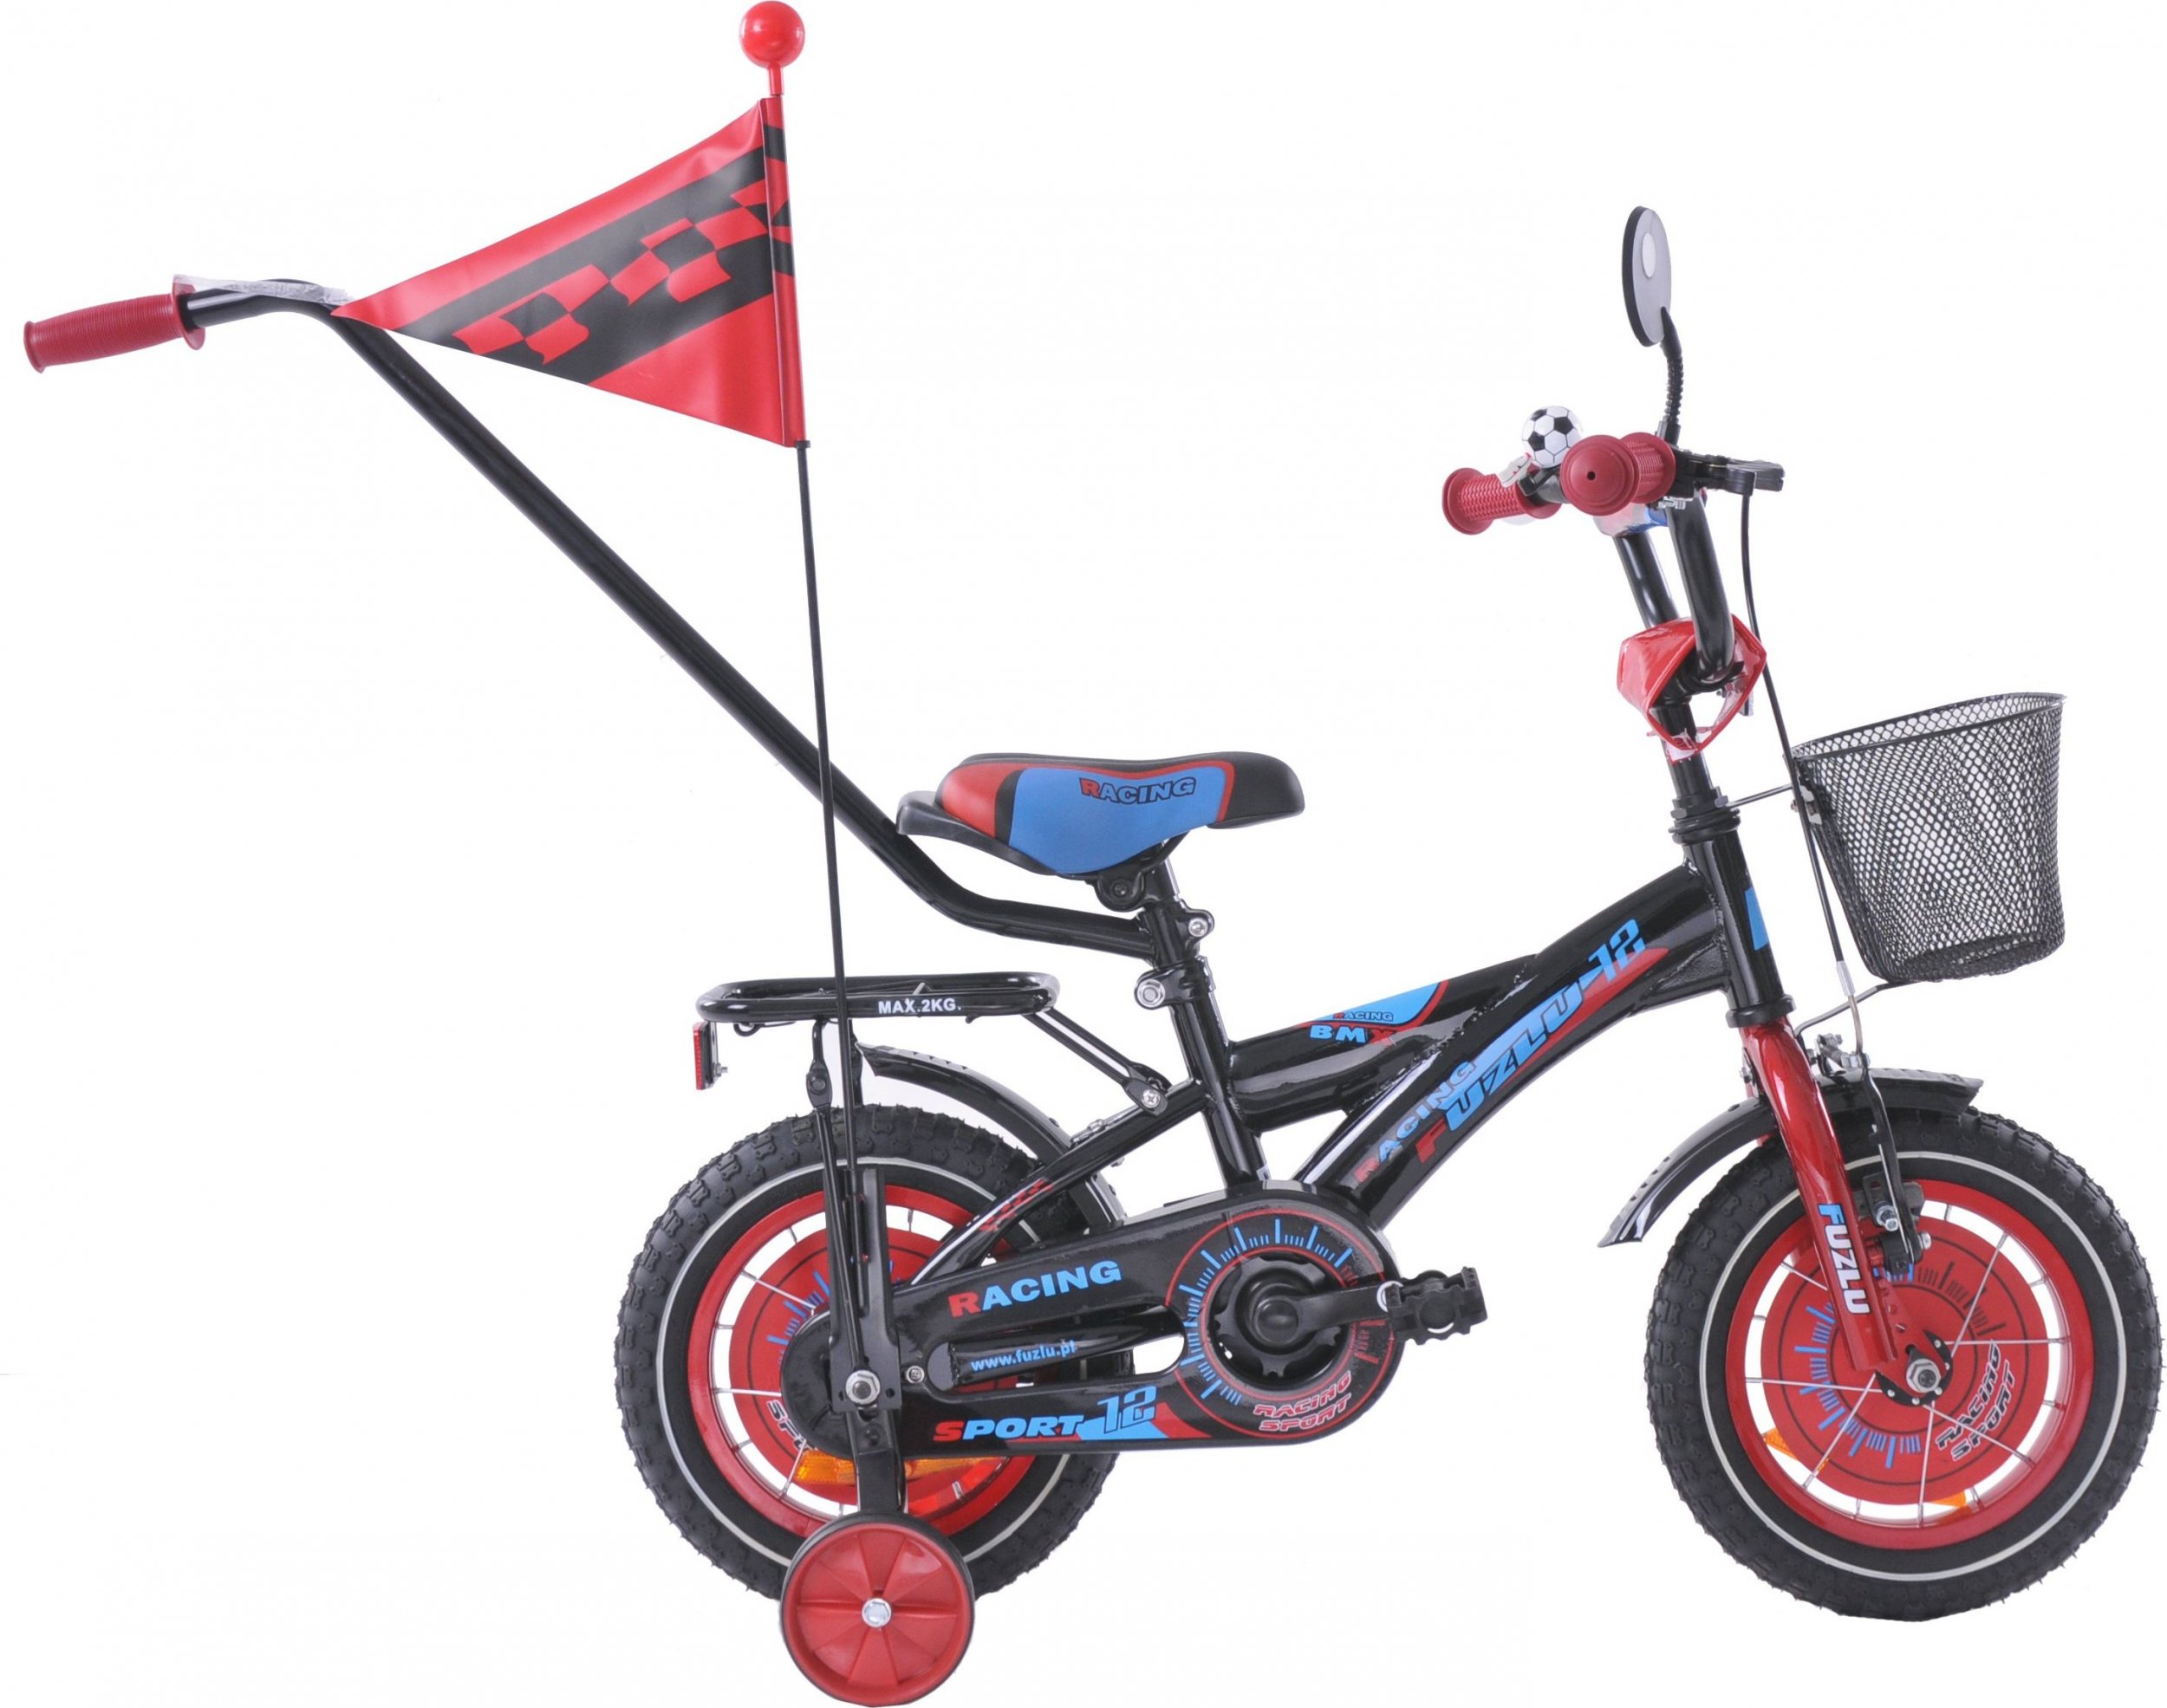 Zdjęcia - Rower dziecięcy Fuzlu  12  Racing czarno-czerwono-niebieski 